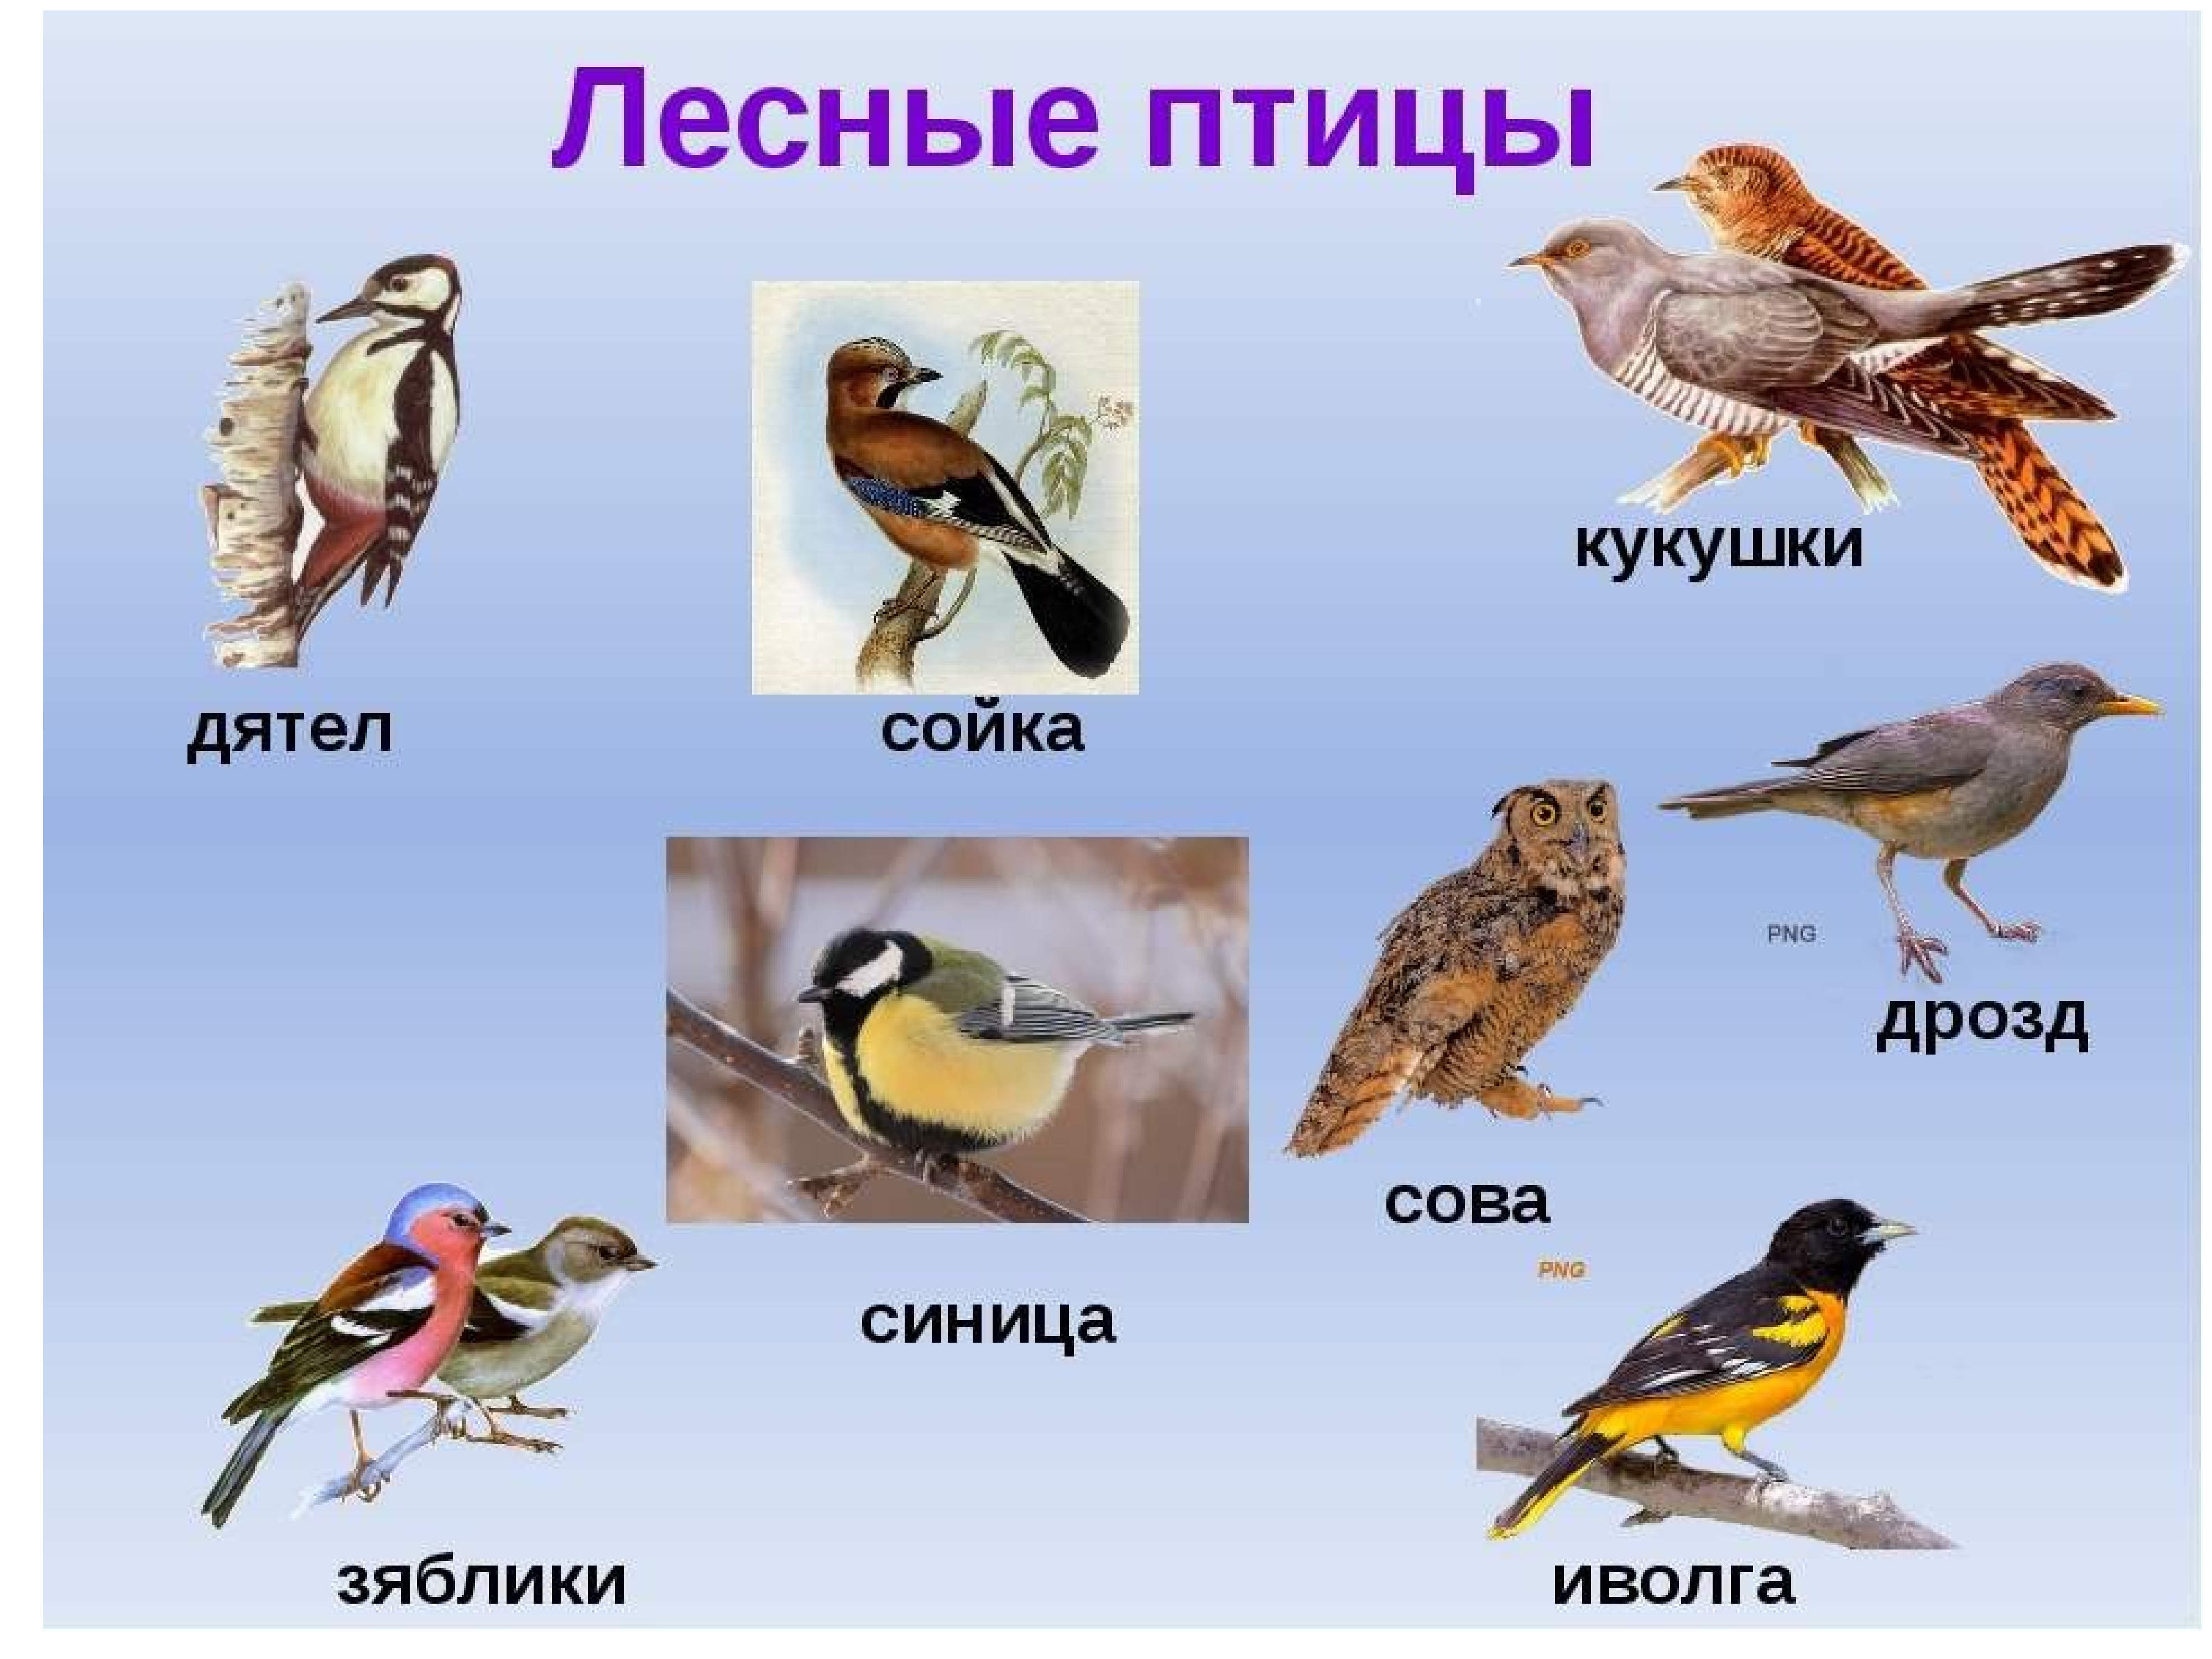 лесные птицы вологодской области фото